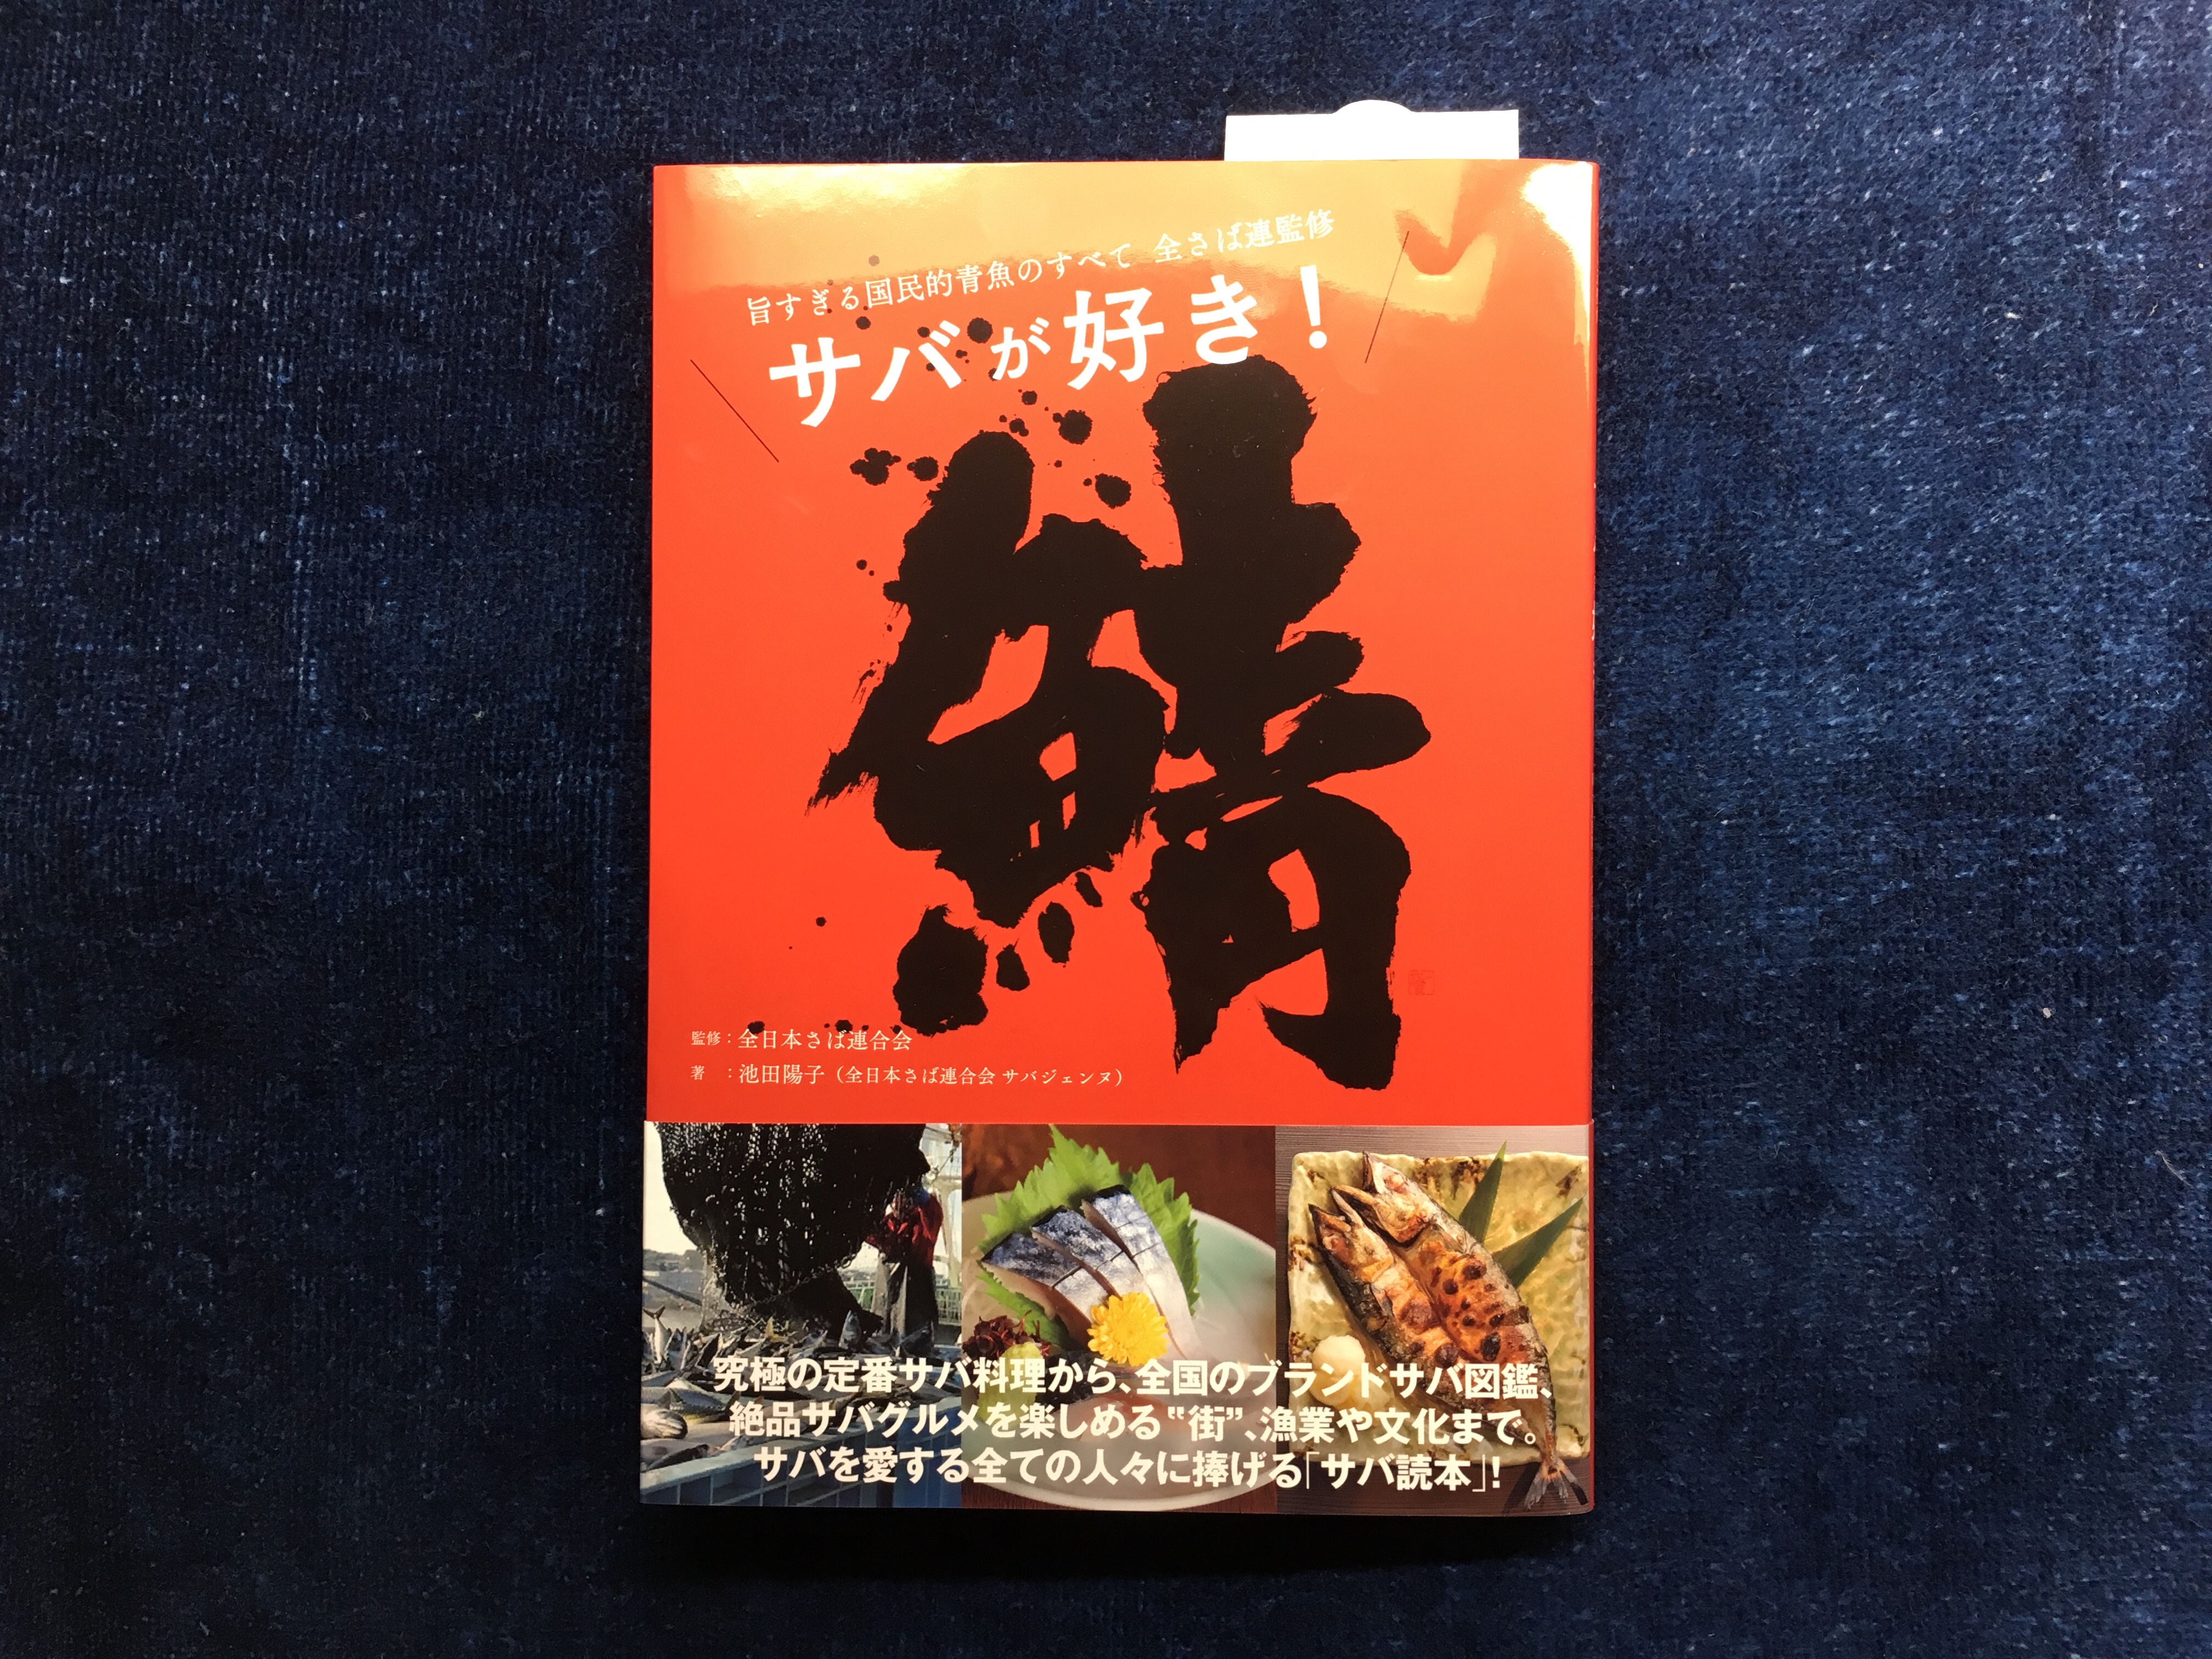 全日本さば連合会初の出版本『鯖 サバが好き！旨すぎる国民的青魚のすべて』を読んでの感想。